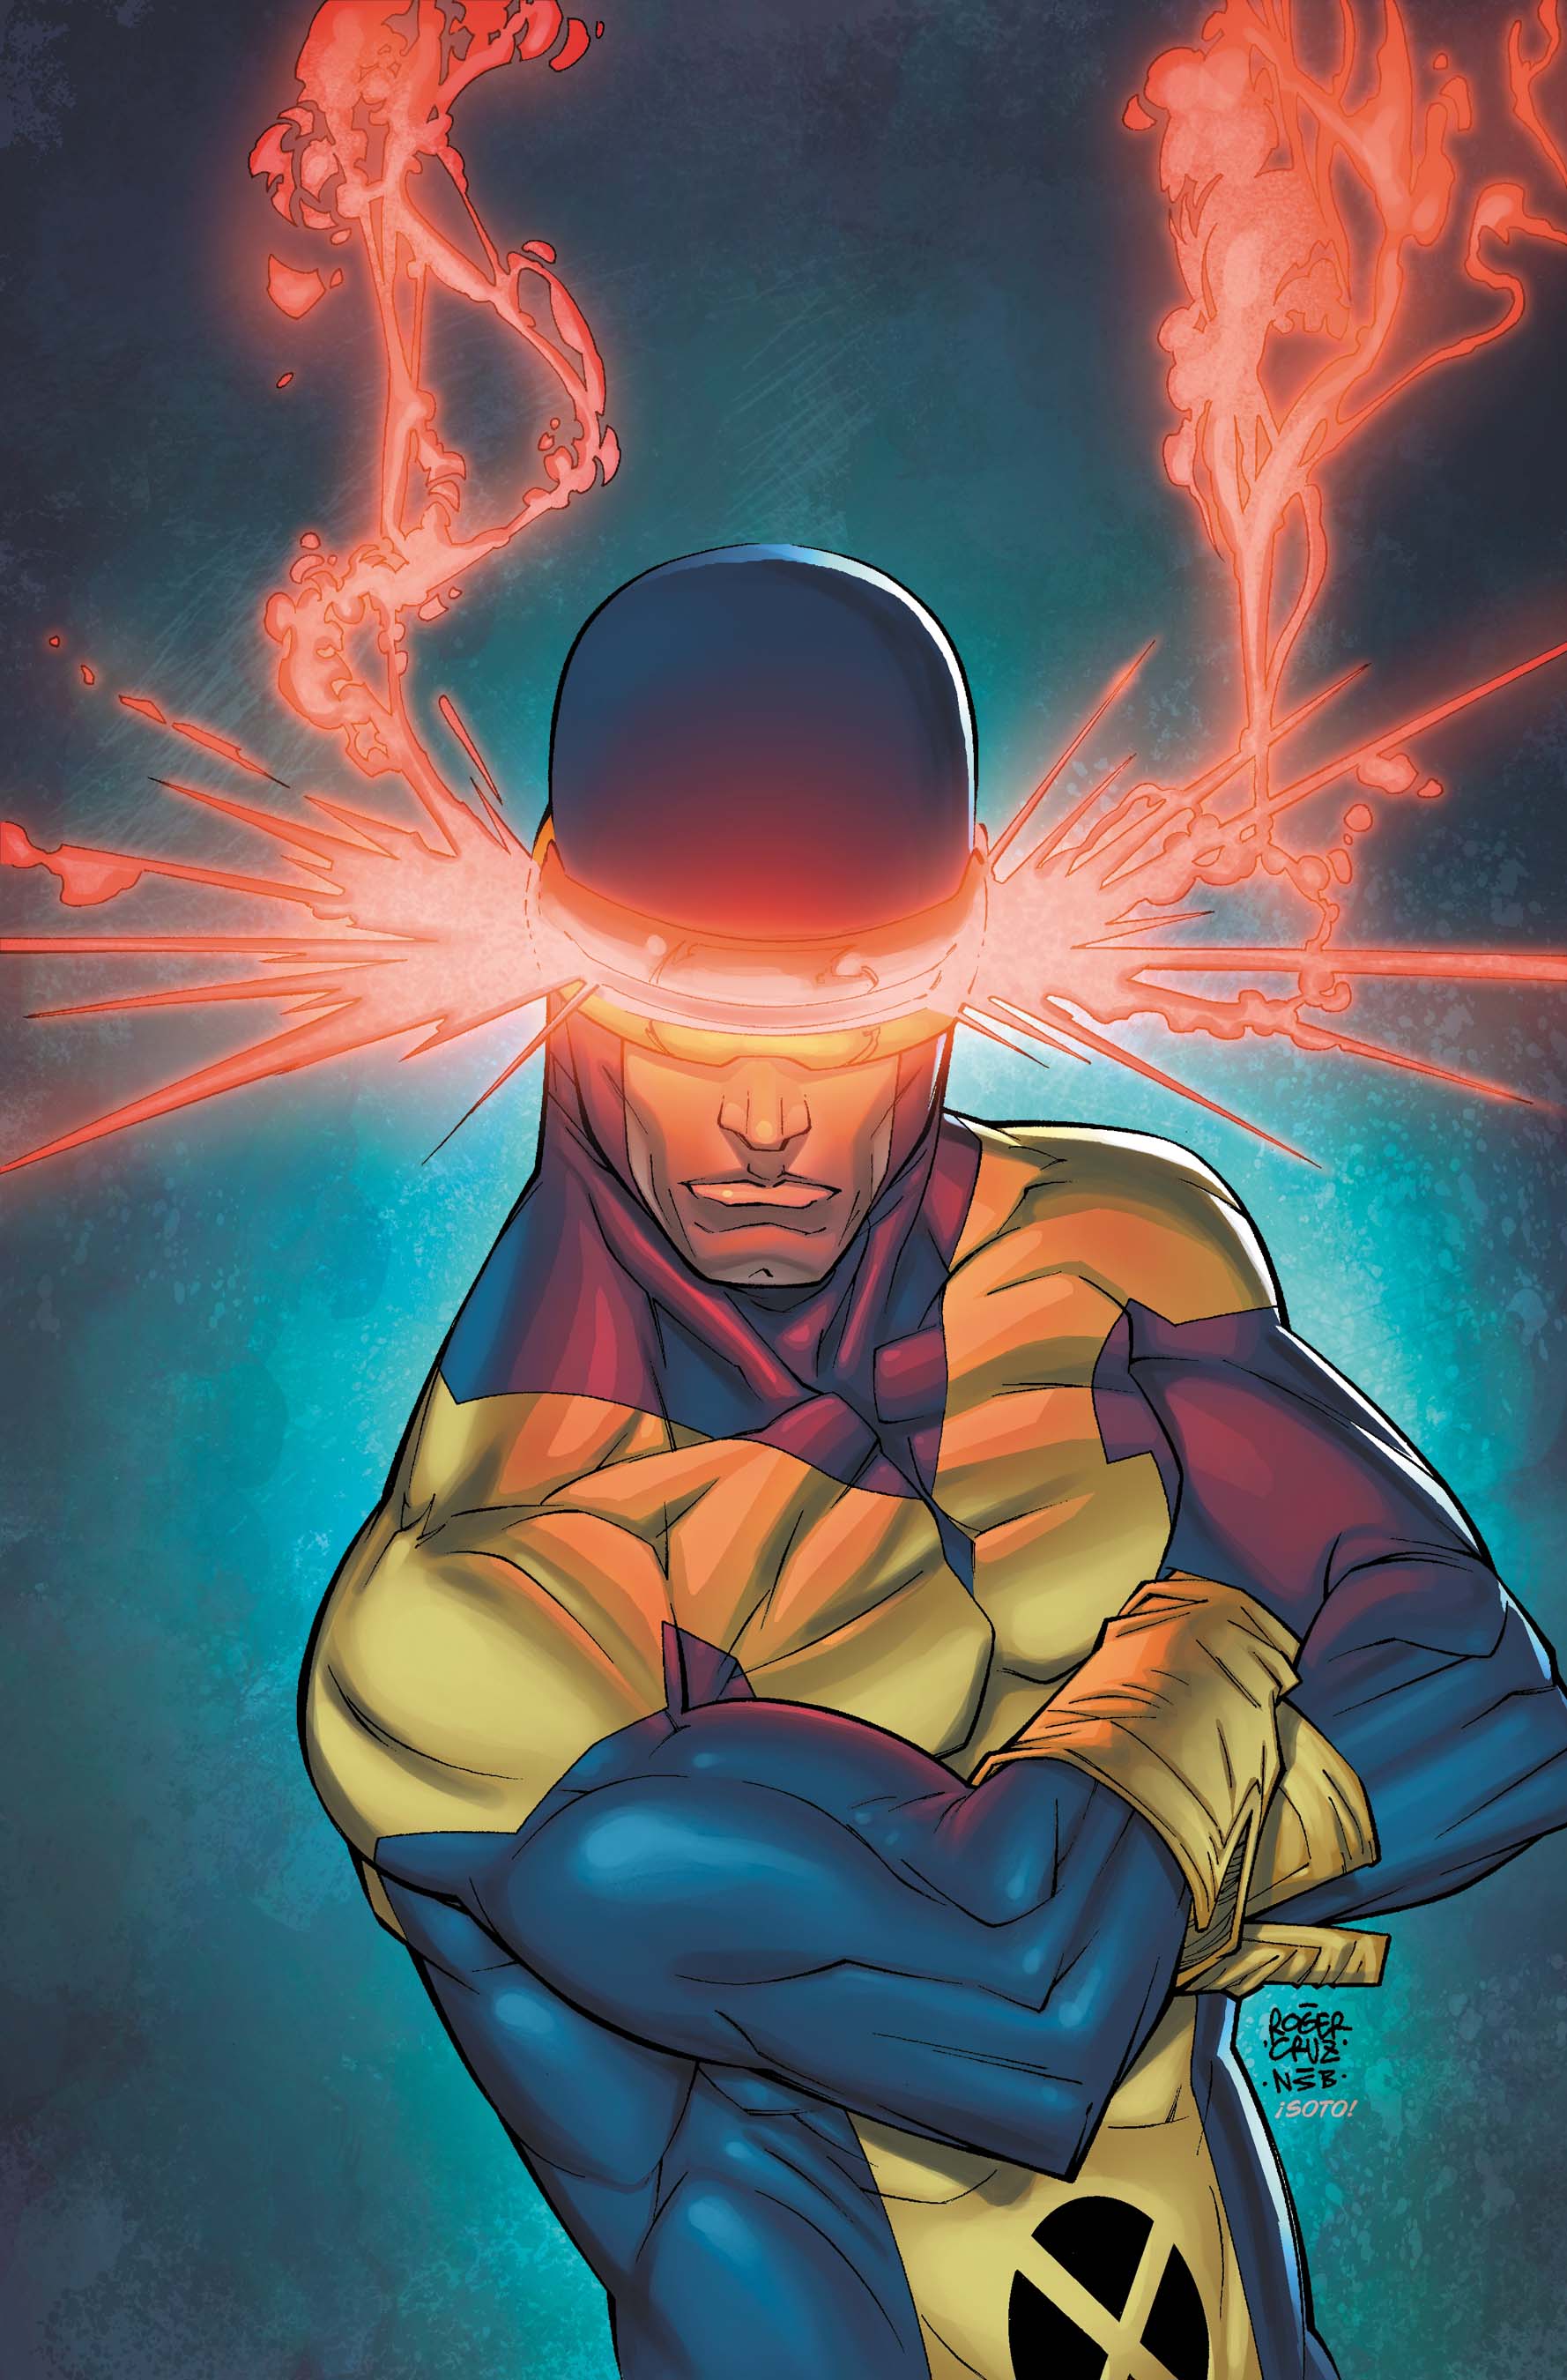 Cyclops (2010) #1 Comics Marvel.com.